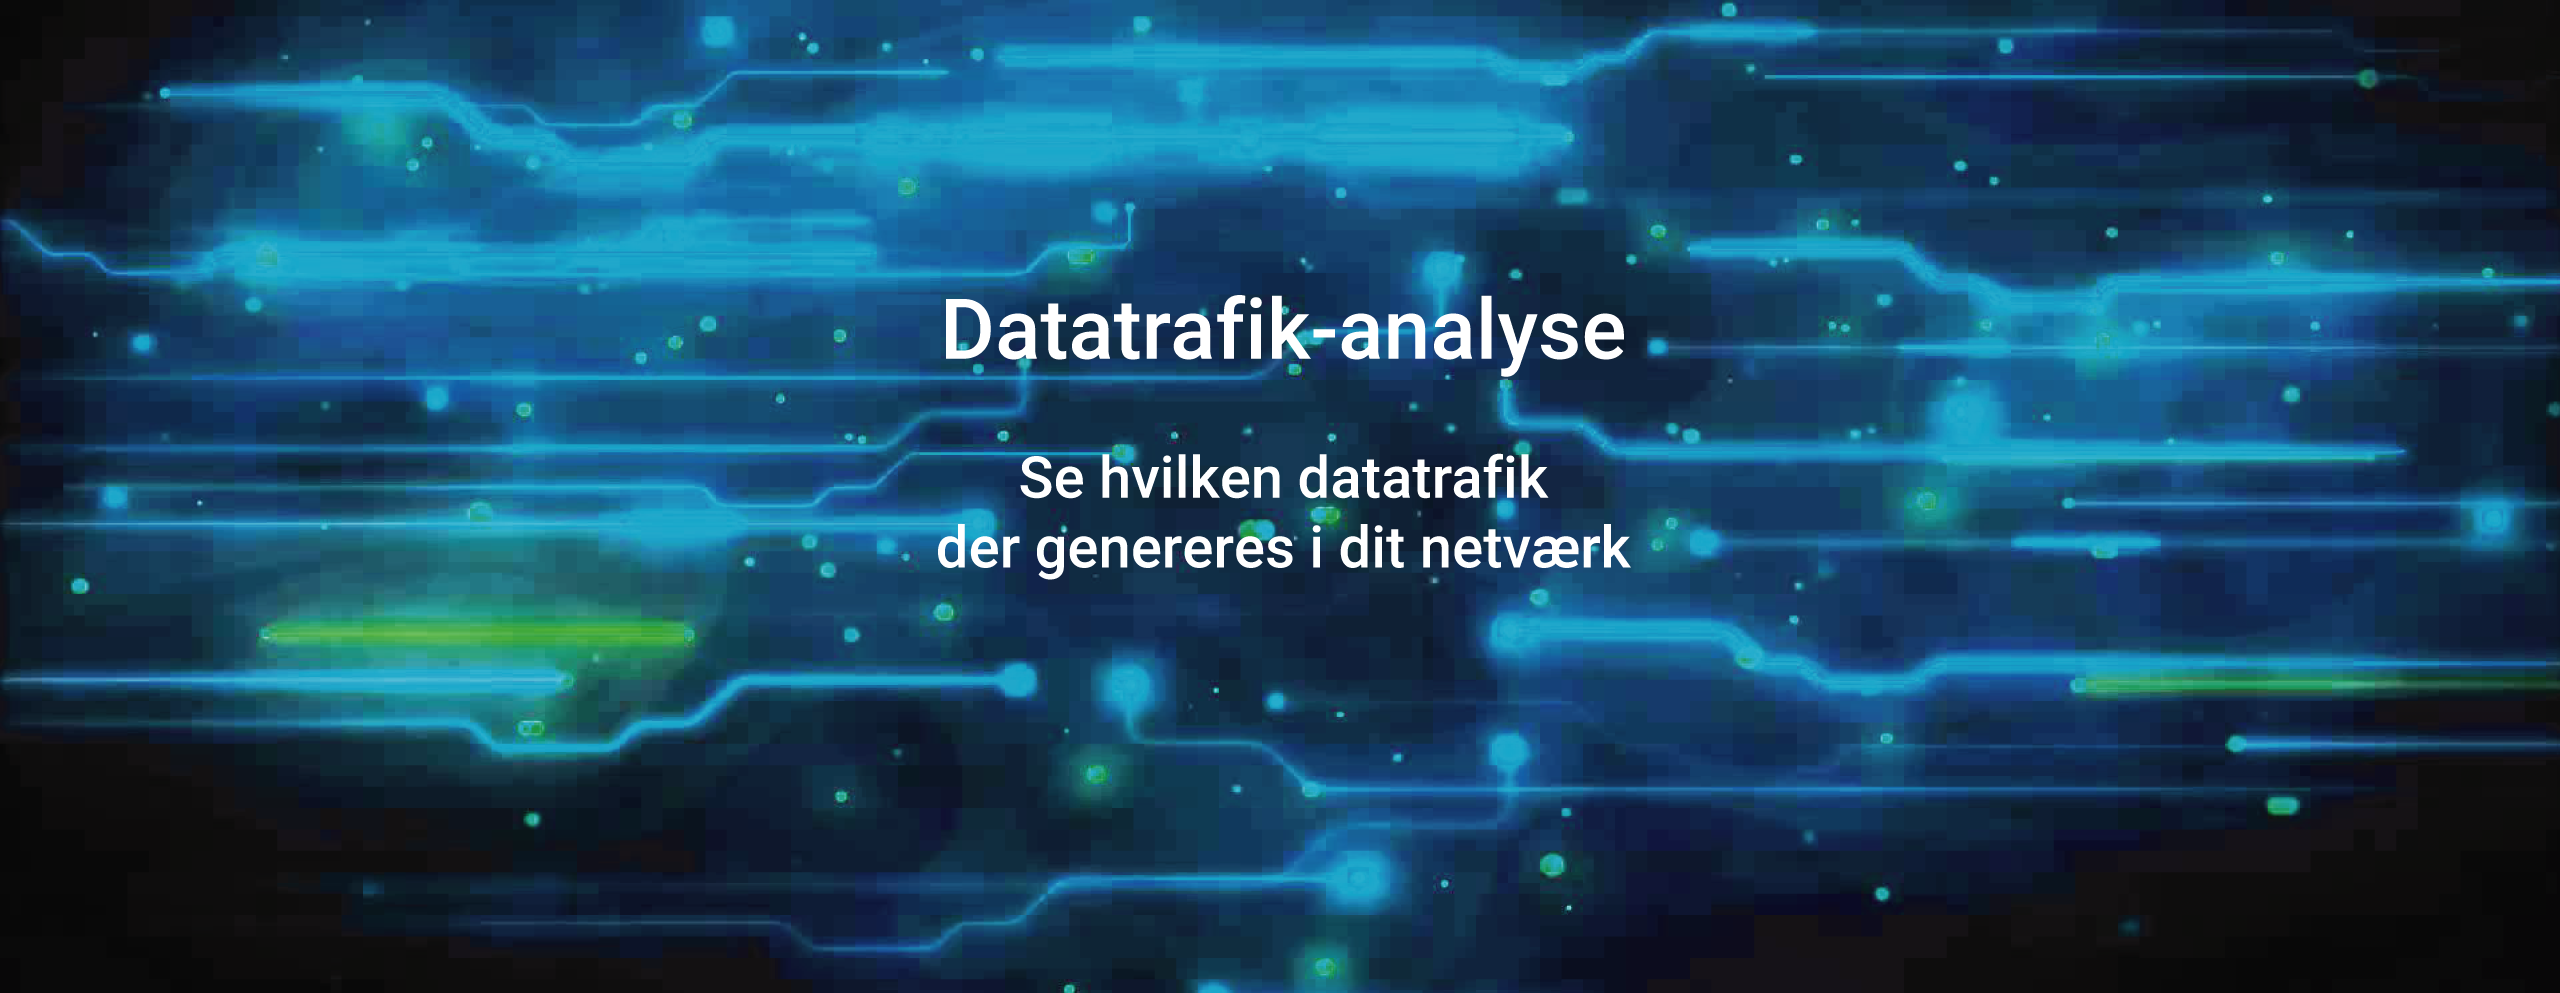 Identificering og analyse af datatrafik